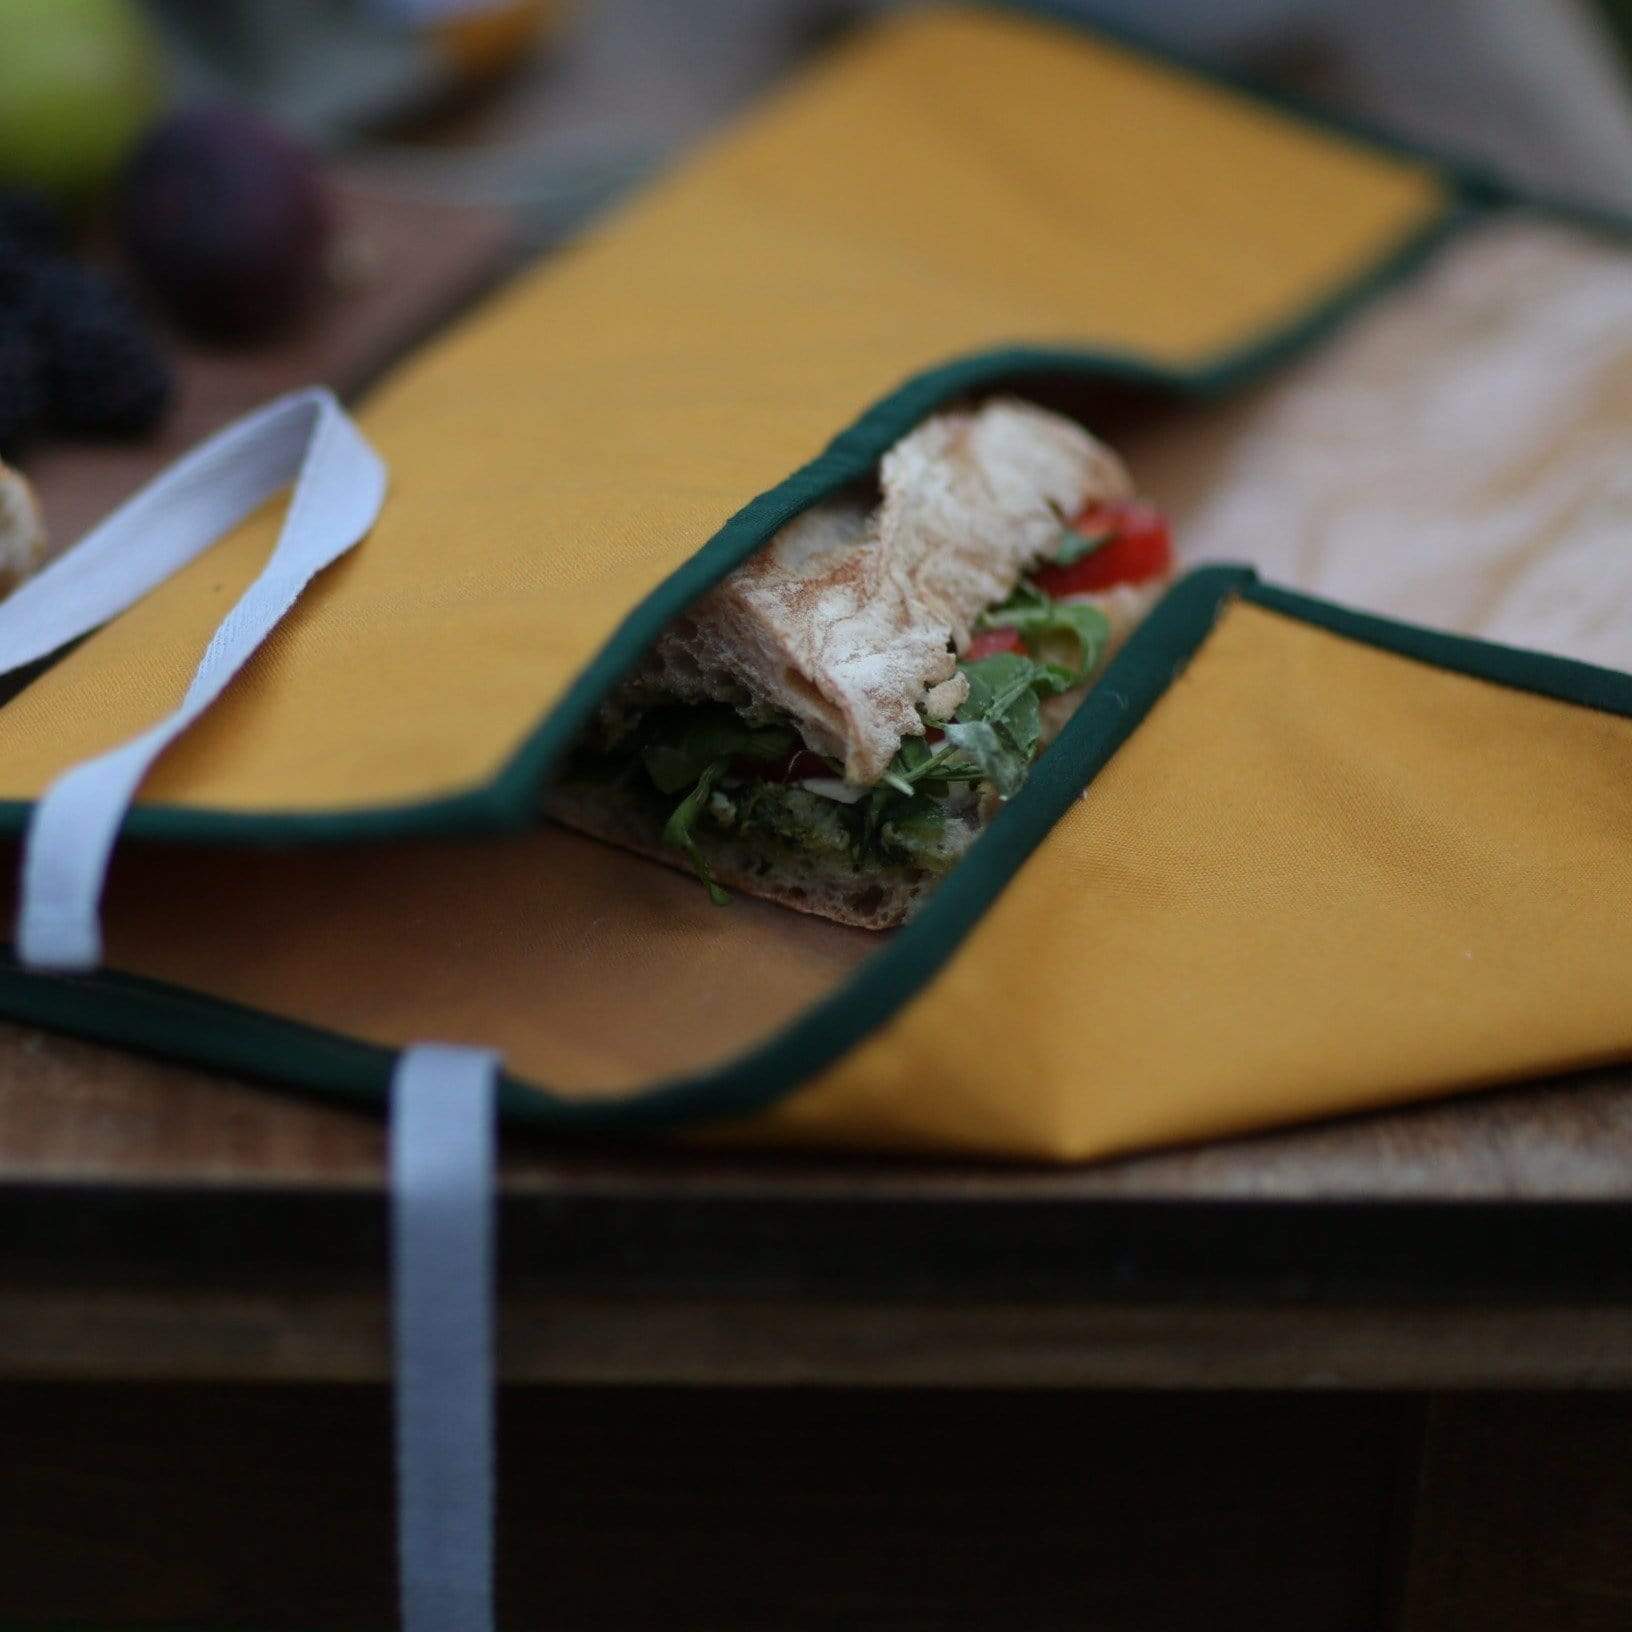 PRIOR SHOP Food bags / wraps SALE Reusable Sandwich Wrap (Pink)